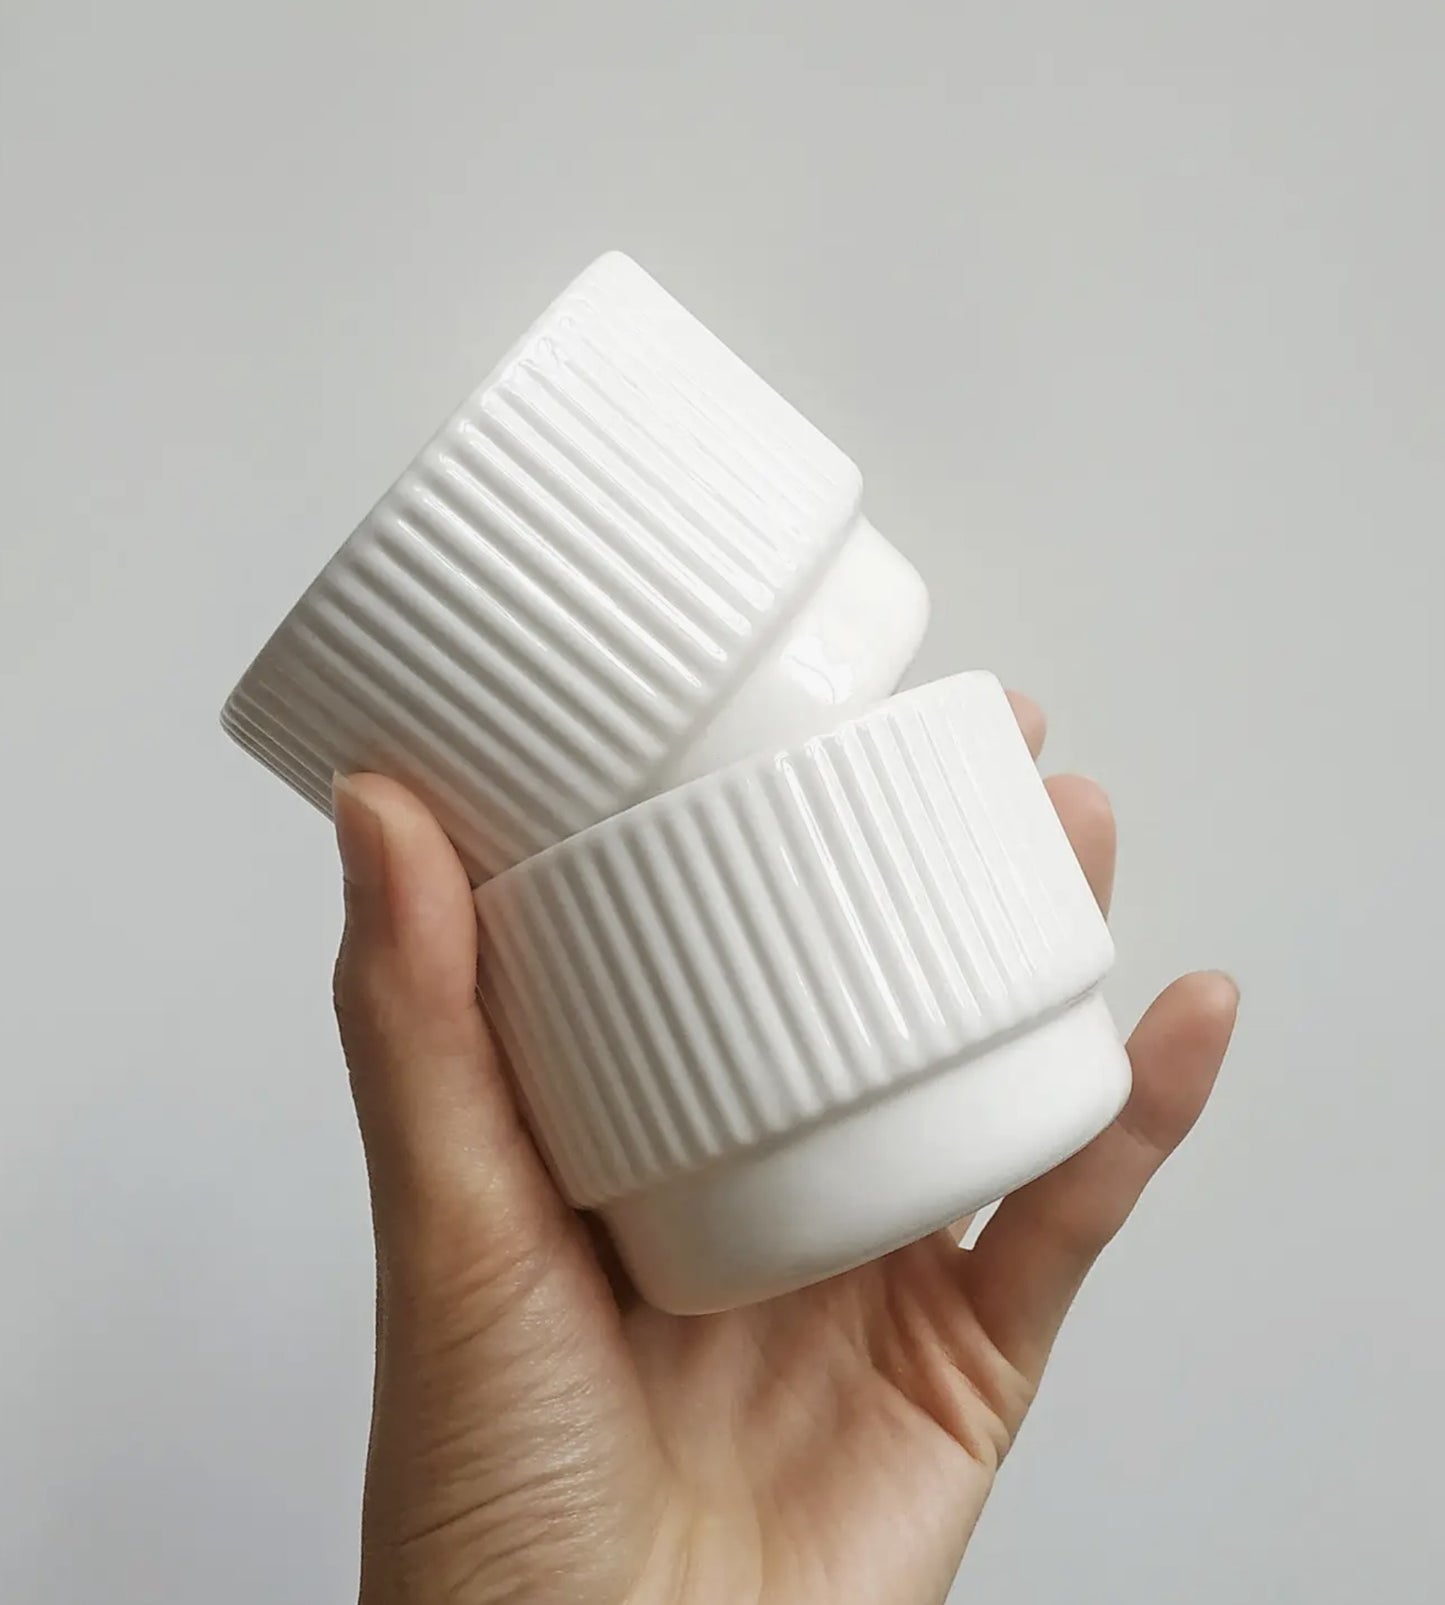 Cappuccino mug 130 ml | white